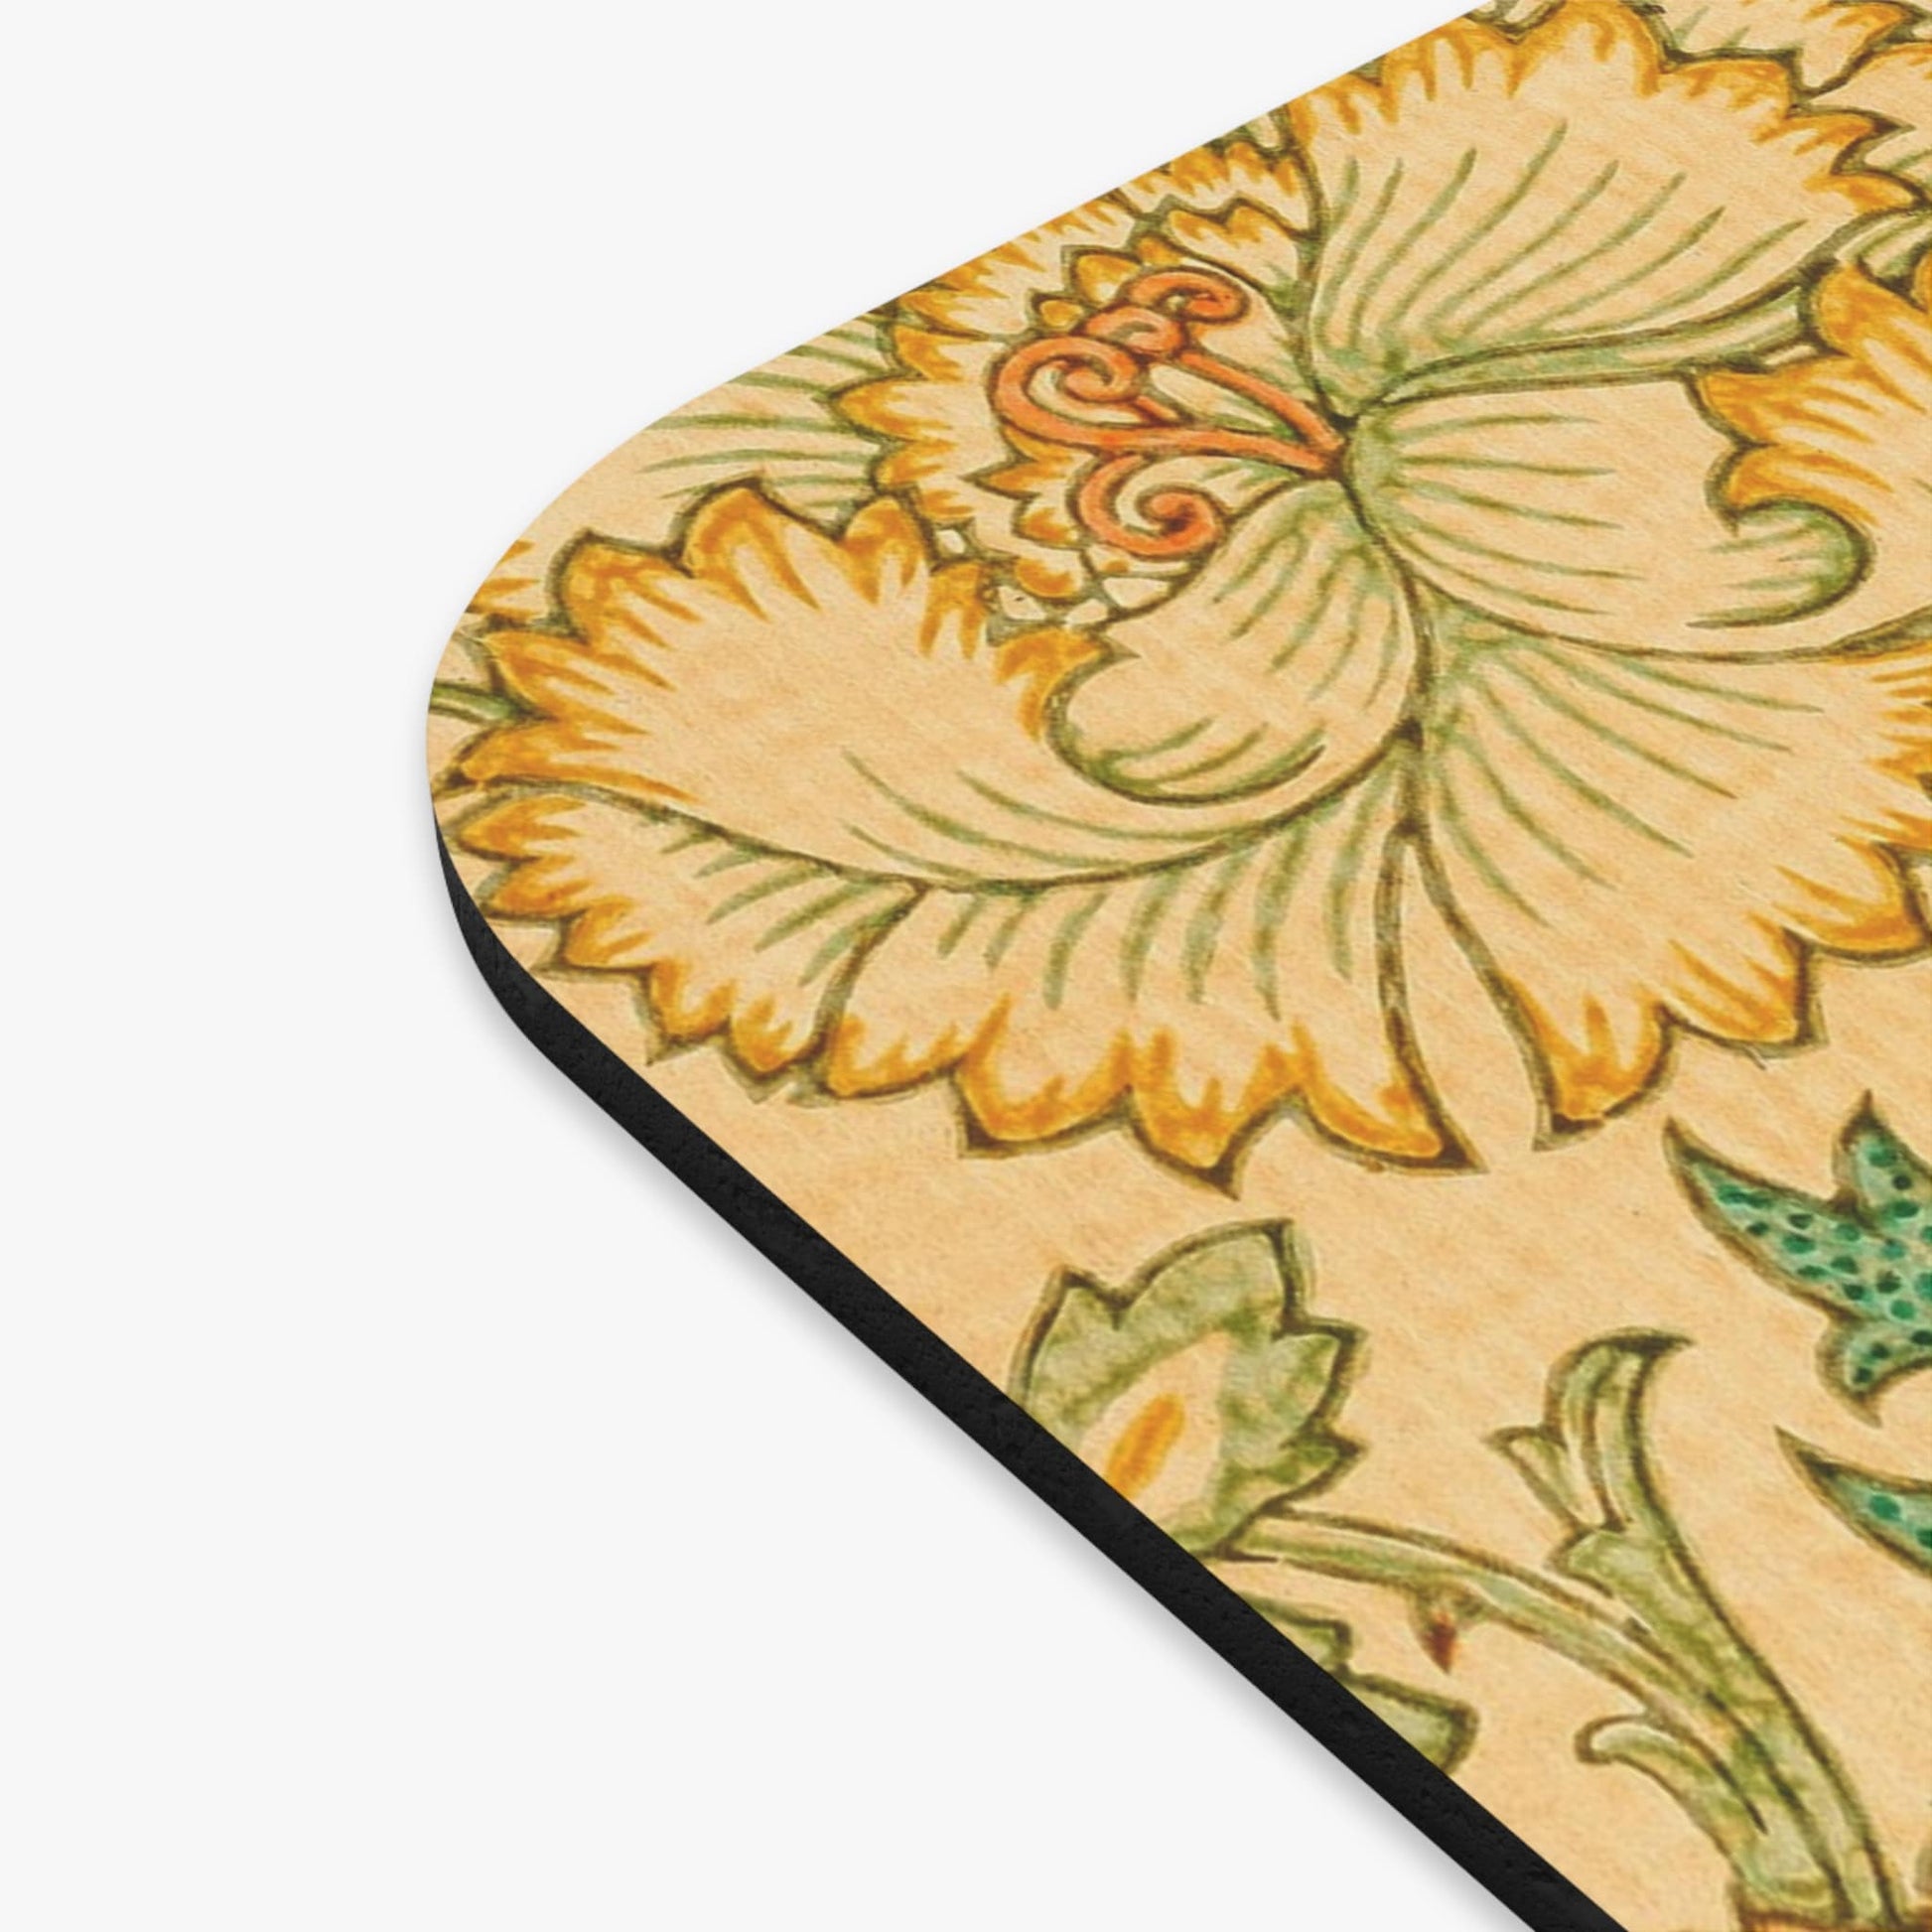 Antique Floral Pattern Vintage Mouse Pad Design Close Up